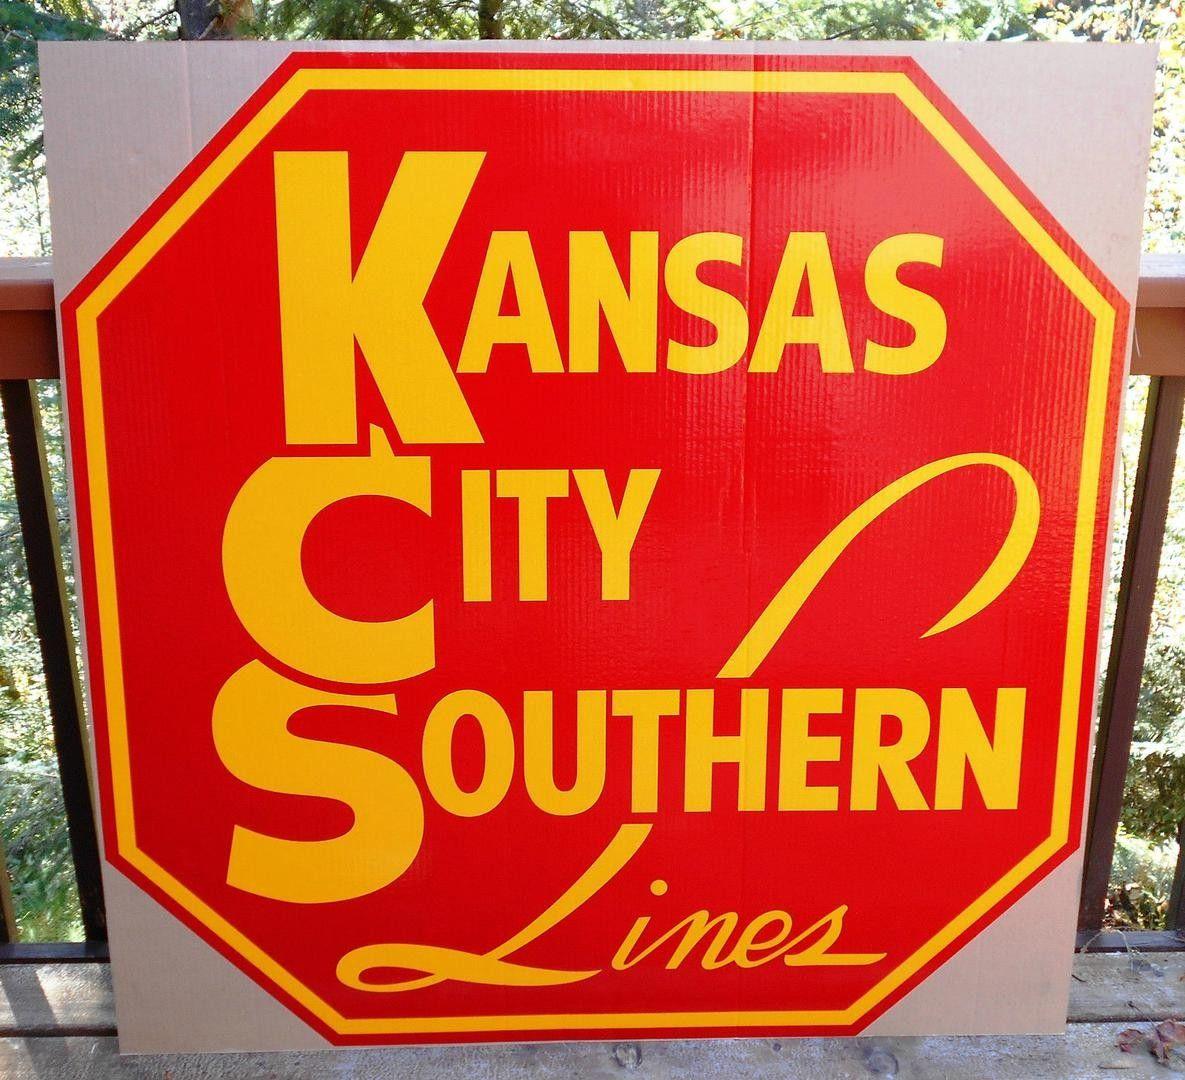 Knasas City Southern Logo - KCS Logo Railcar Decal City Southern